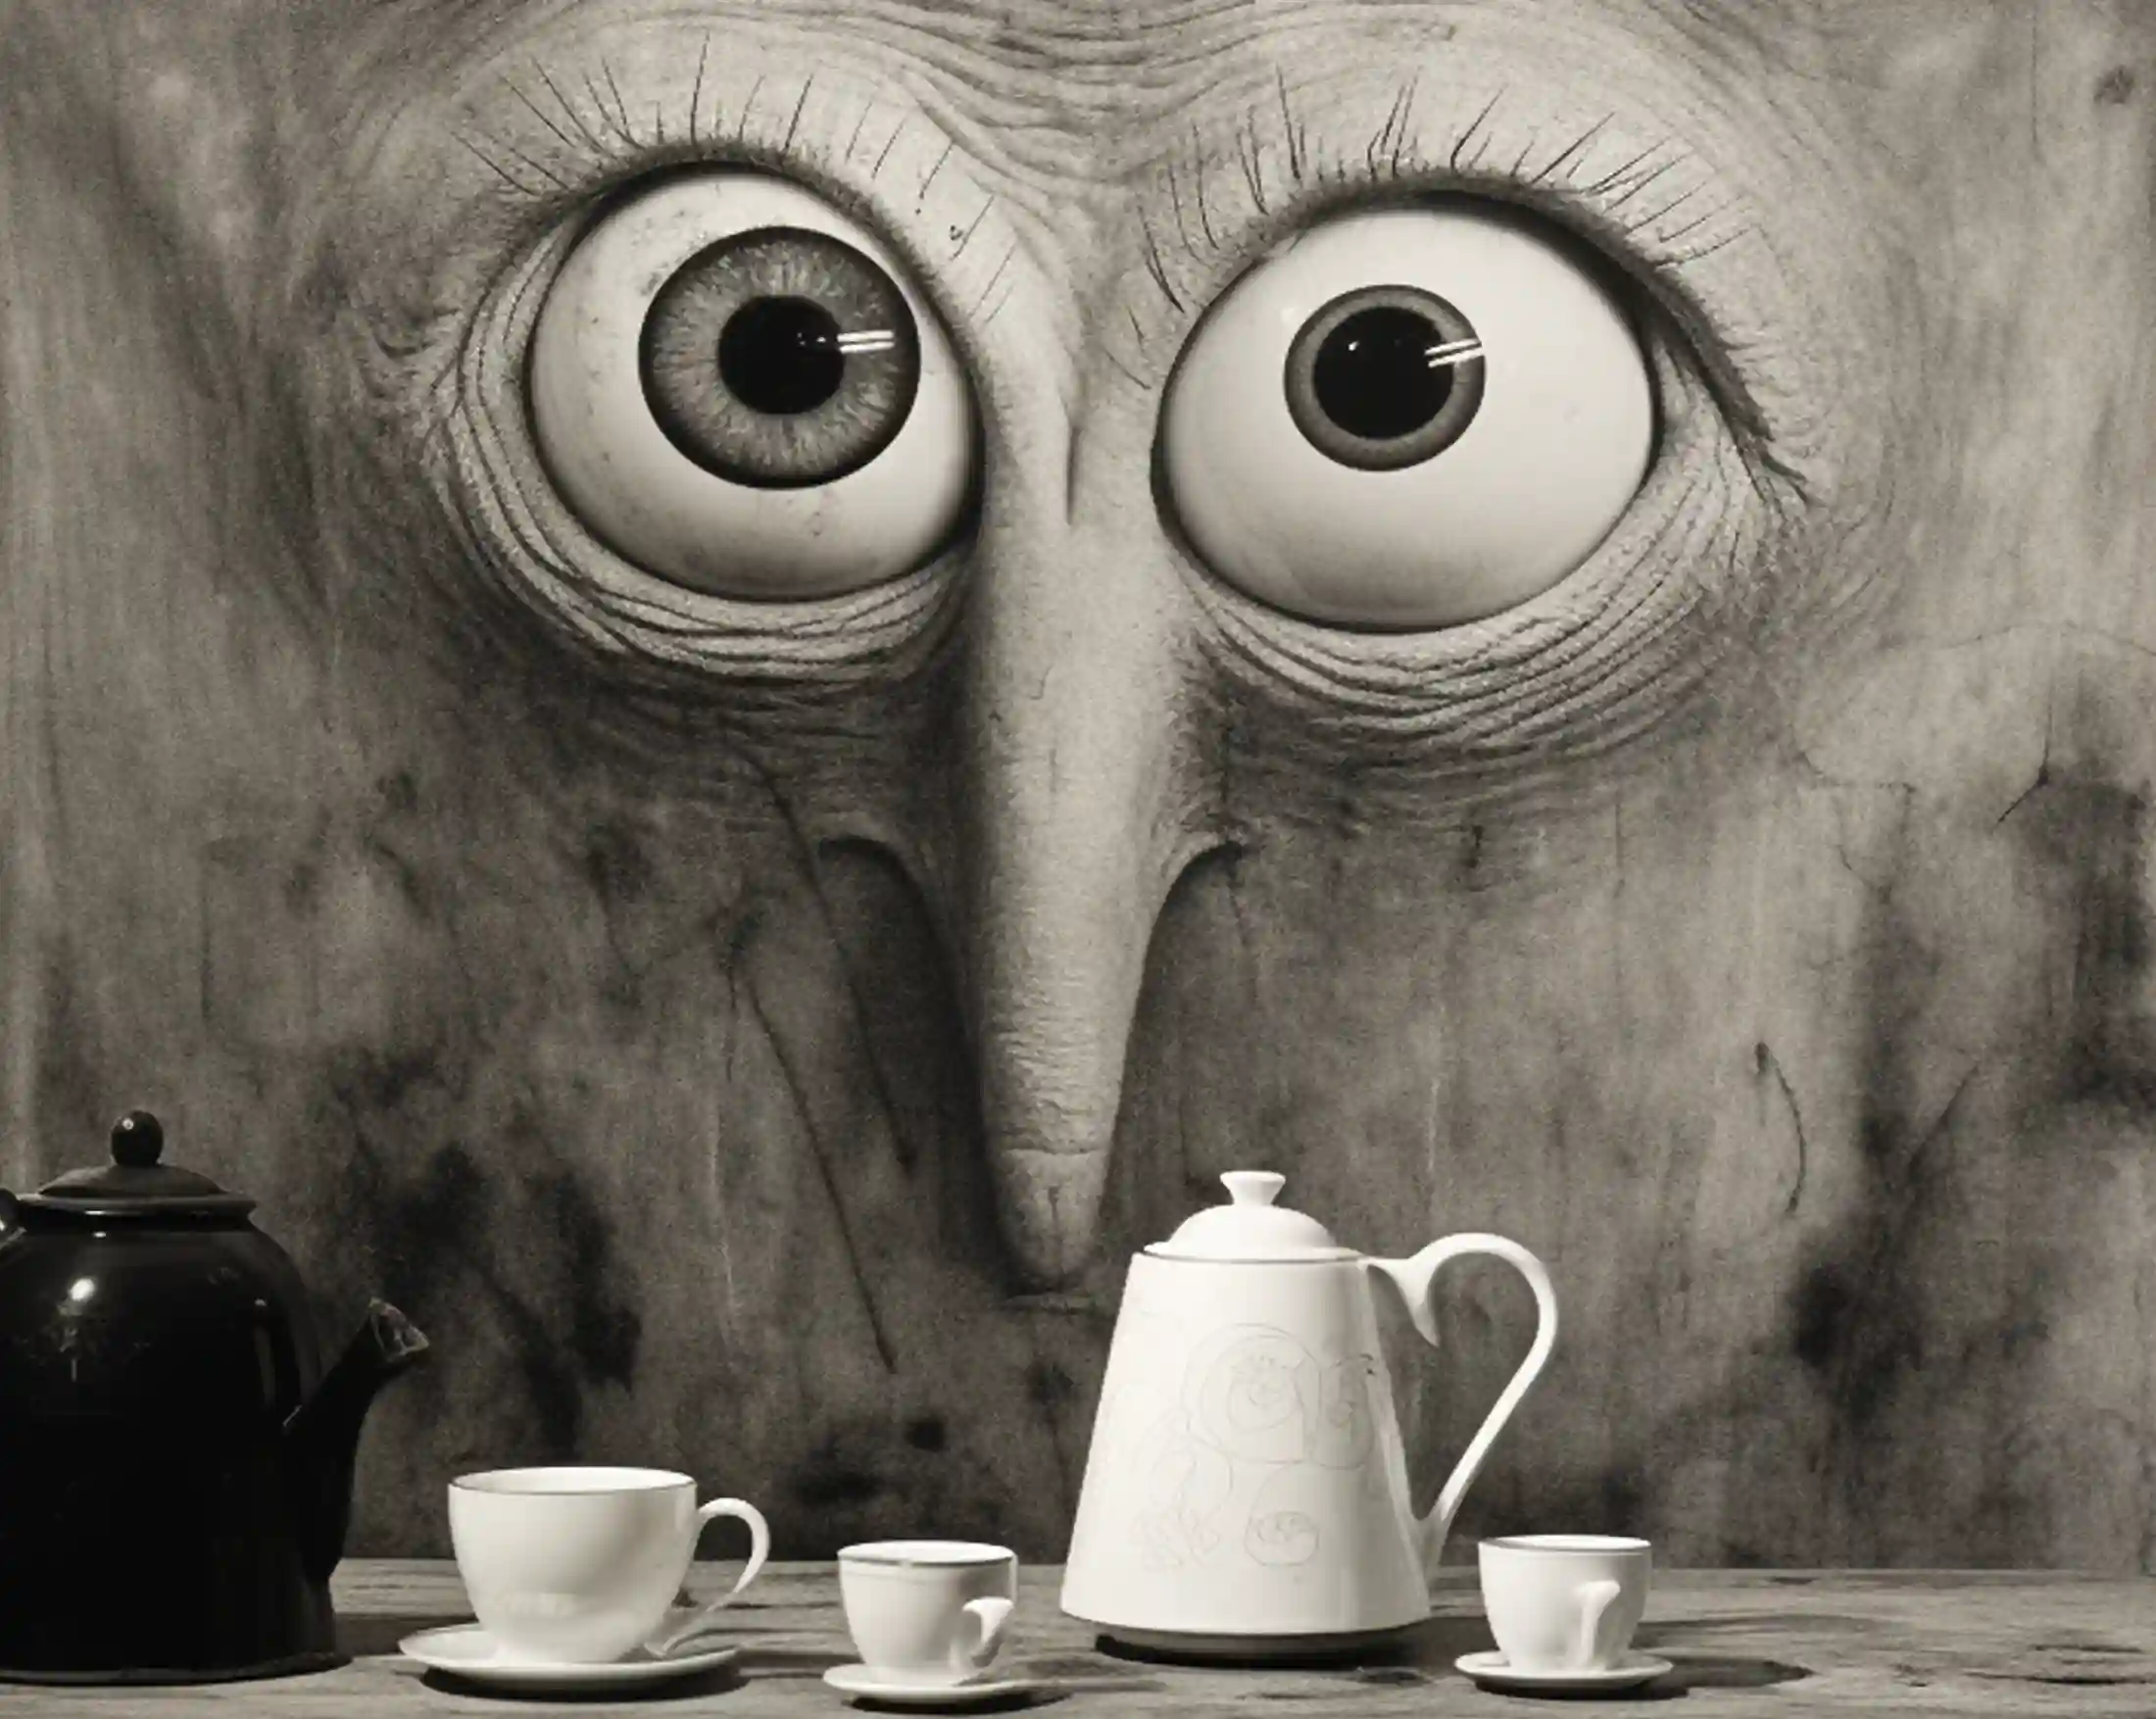 Ist Kaffee ungesund? Das Bild beantwortet die Frage, da das Gesicht depressiv reinschaut, dämonisch ist es etwas auch. Im Vordergrund stehen mehrere Kaffeetassen, welche die Frage beantworten: Wieviel Kaffee ist gesund? daher sind es drei Tassen